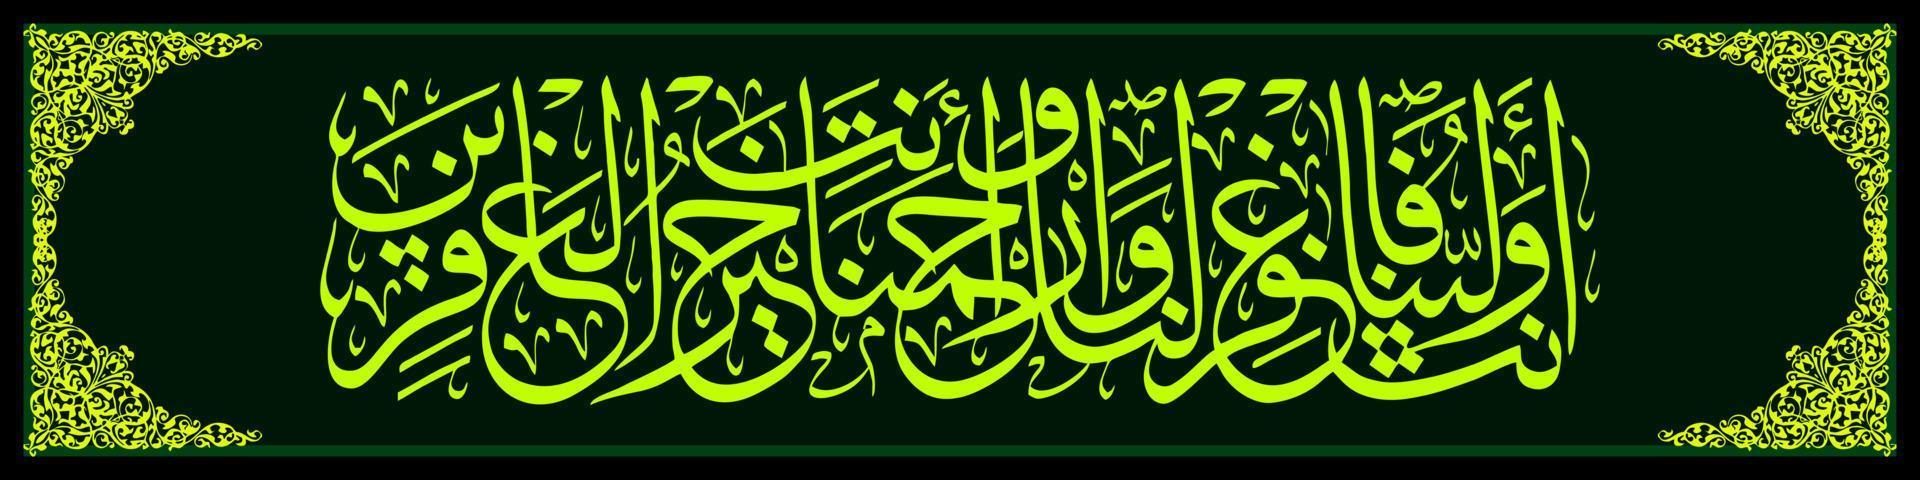 caligrafía árabe, al qur'an surah al a'raf 155, traducción eres nuestro líder, así que perdónanos y danos misericordia. eres el mejor perdonador. vector